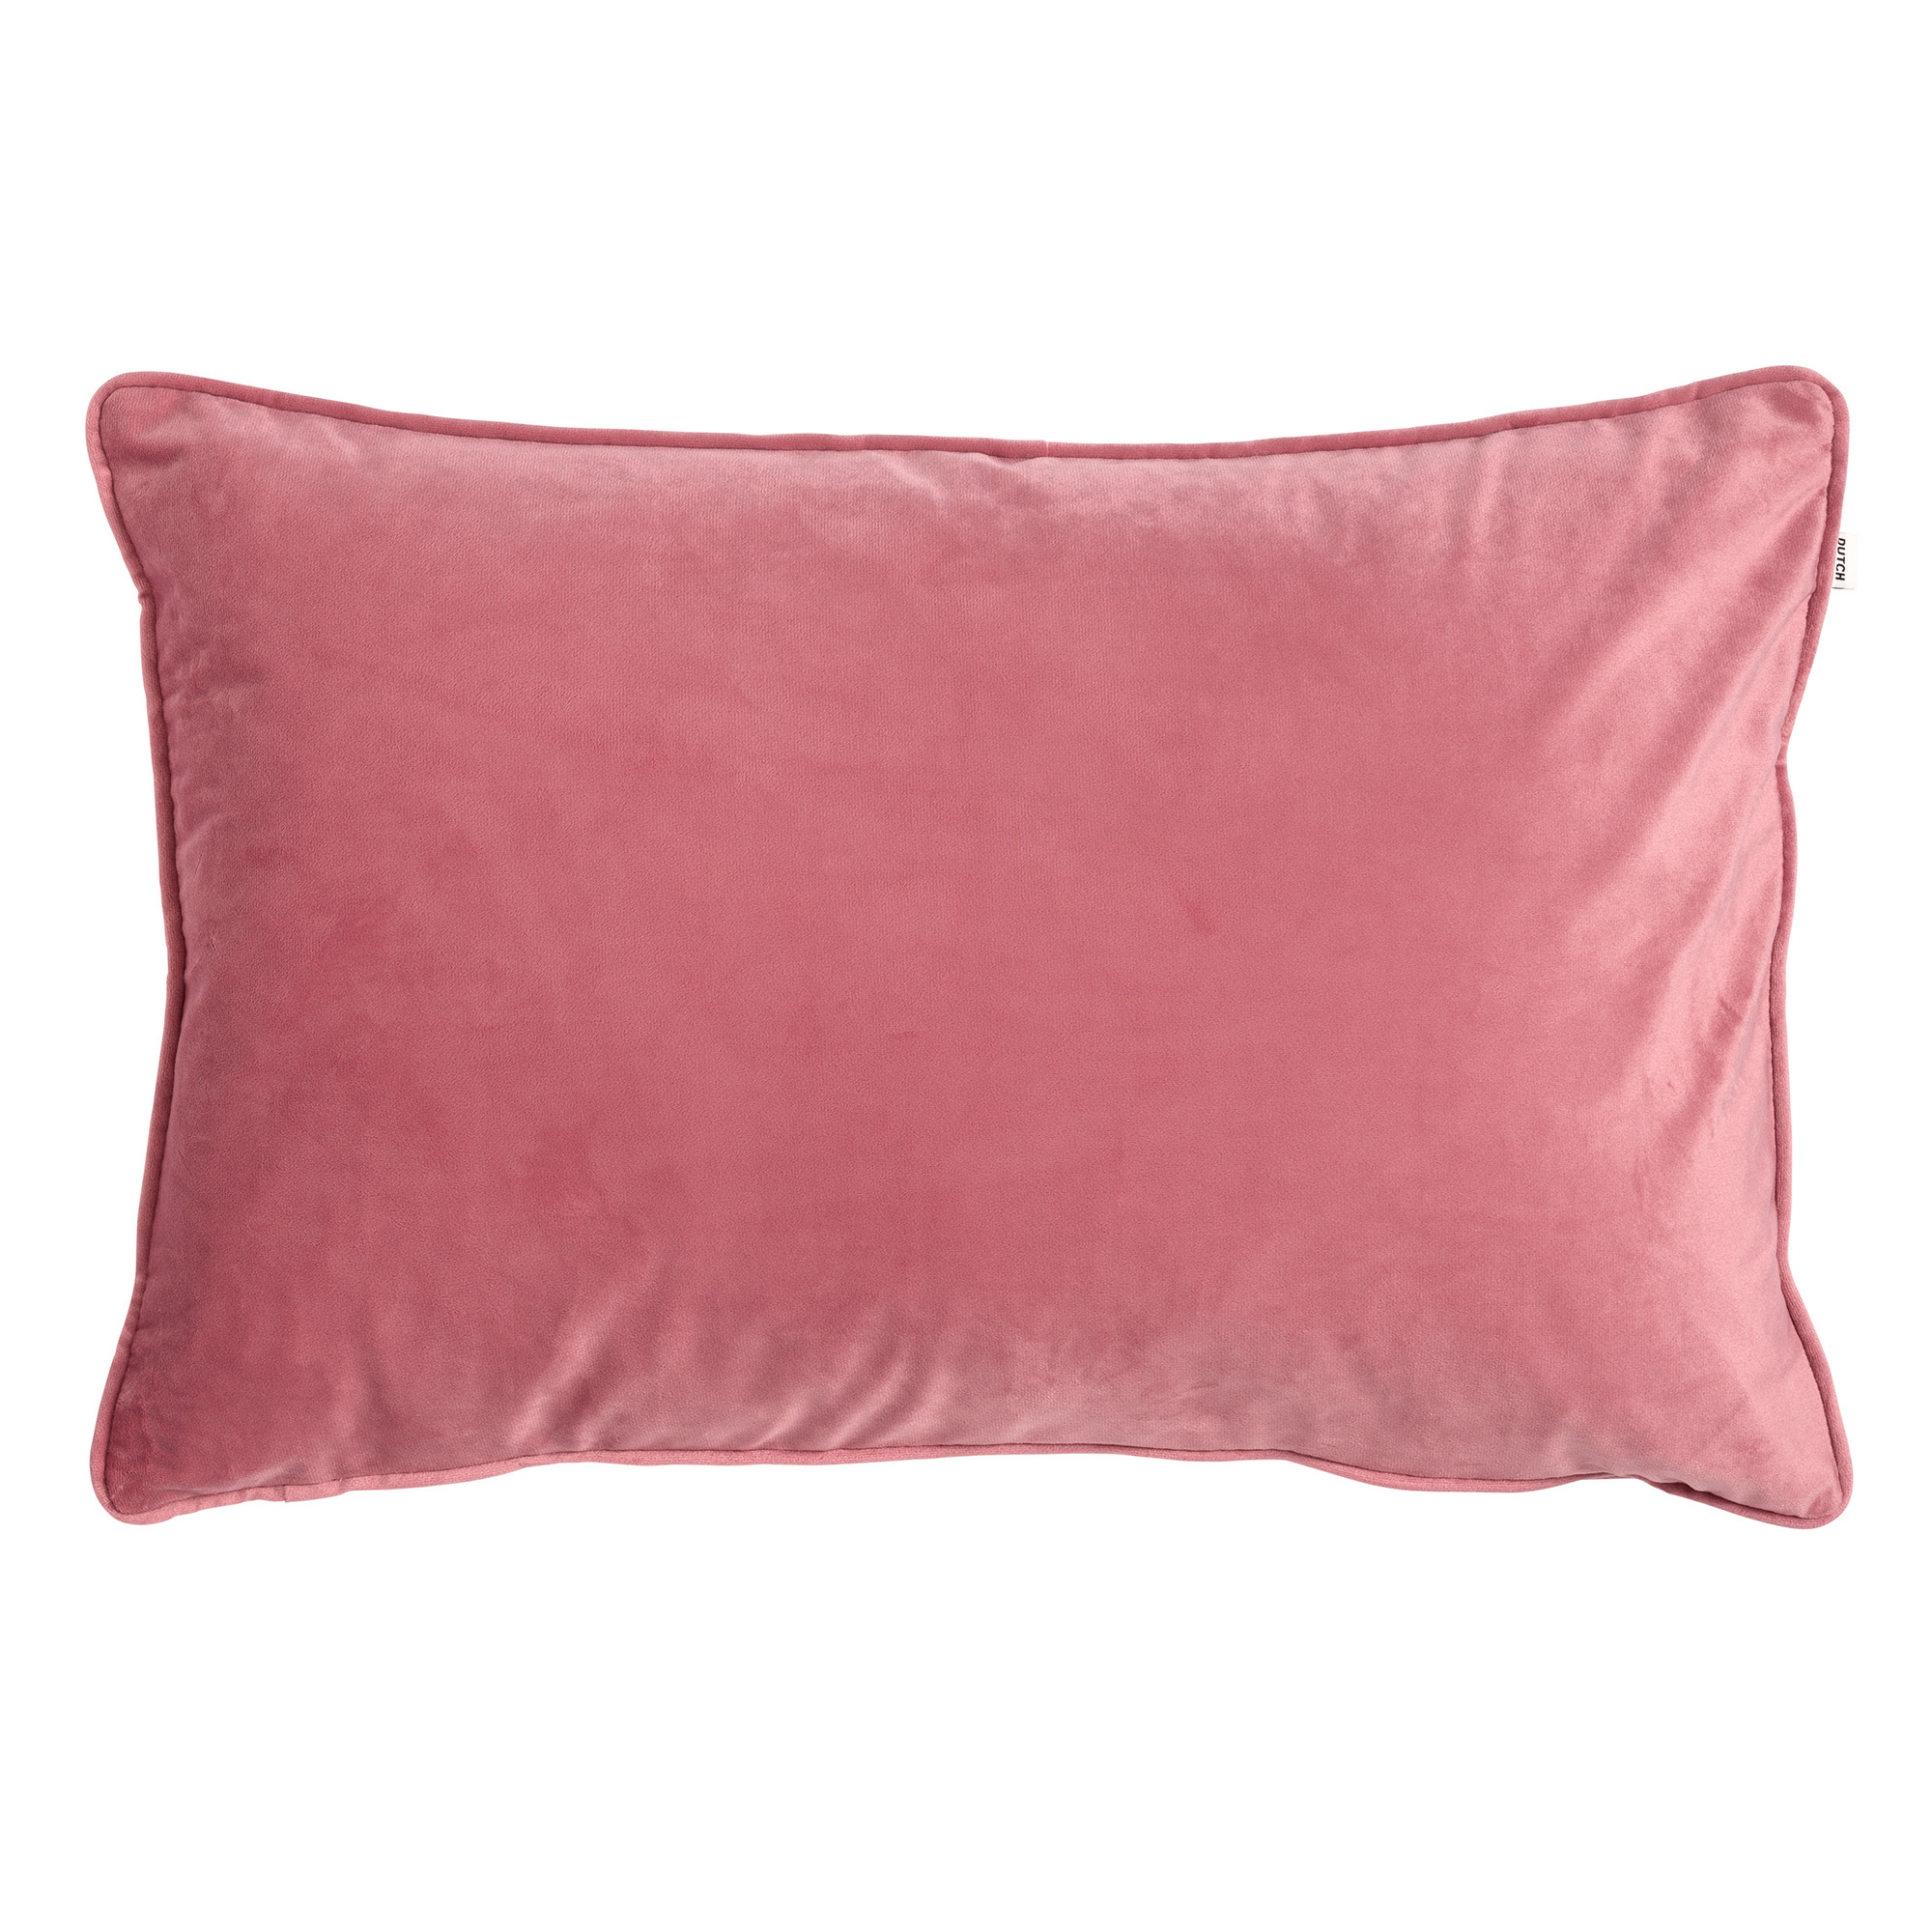 FINN - Kussenhoes velvet 40x60 cm Dusty Rose - roze